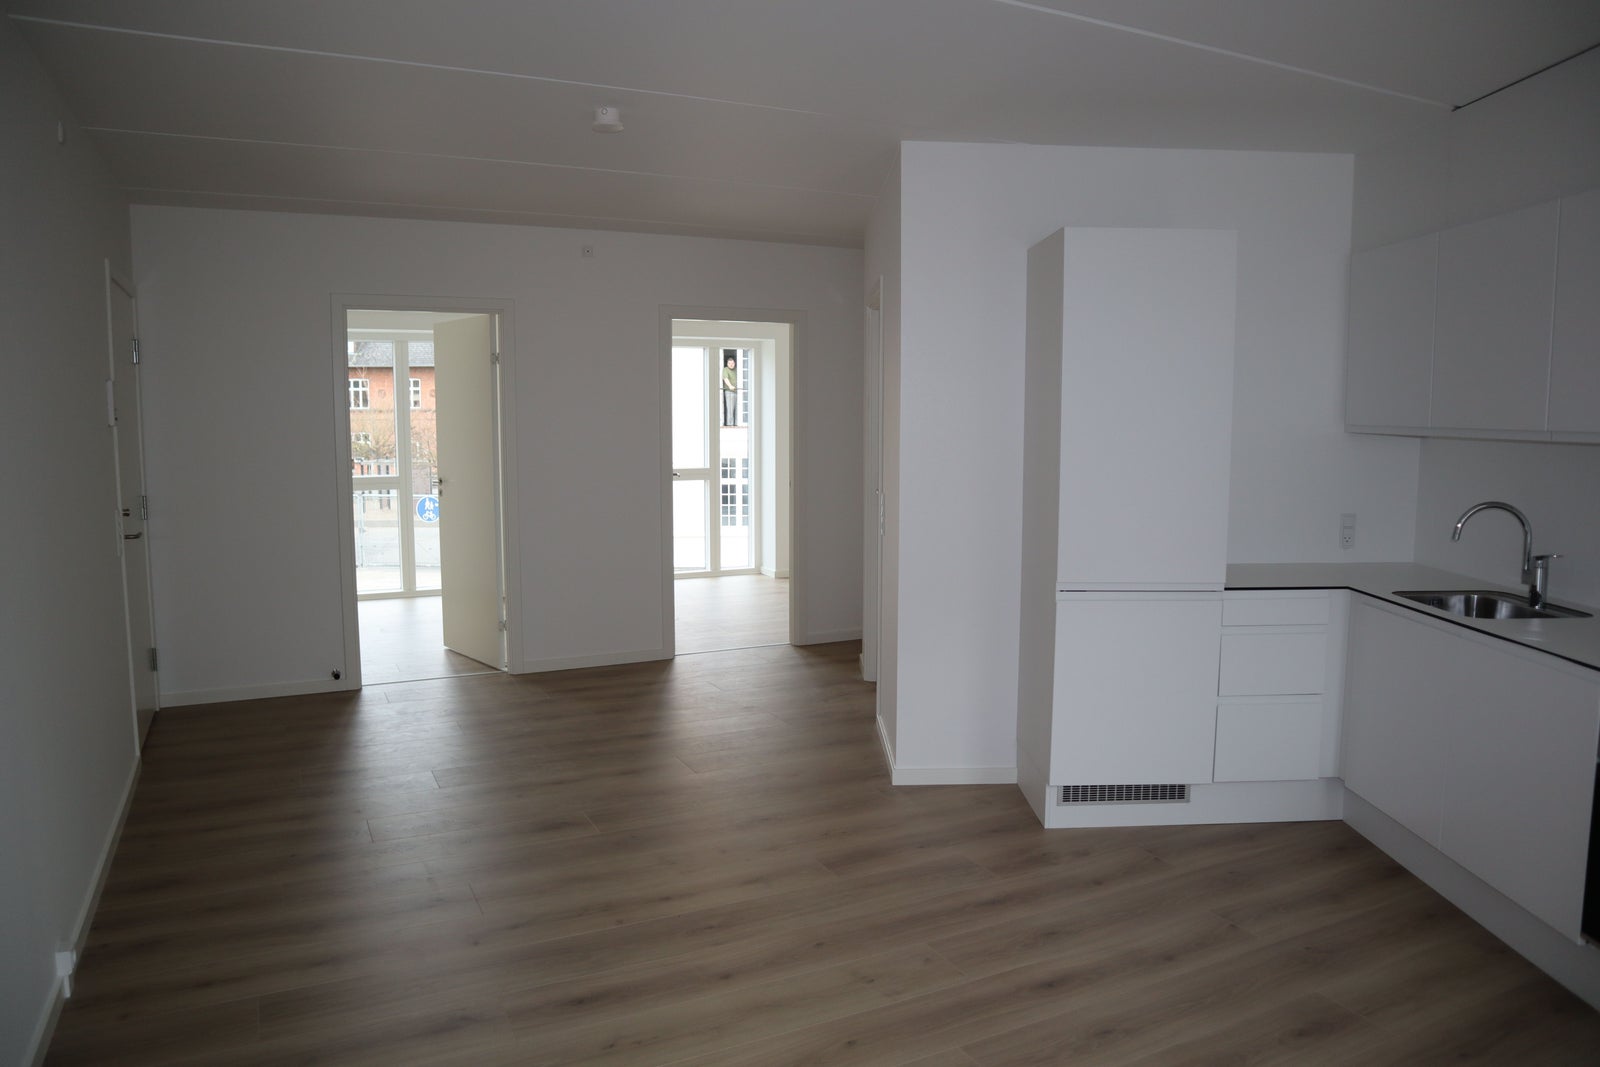 3 værelses lejlighed i Frederikssund 3600 på 71...